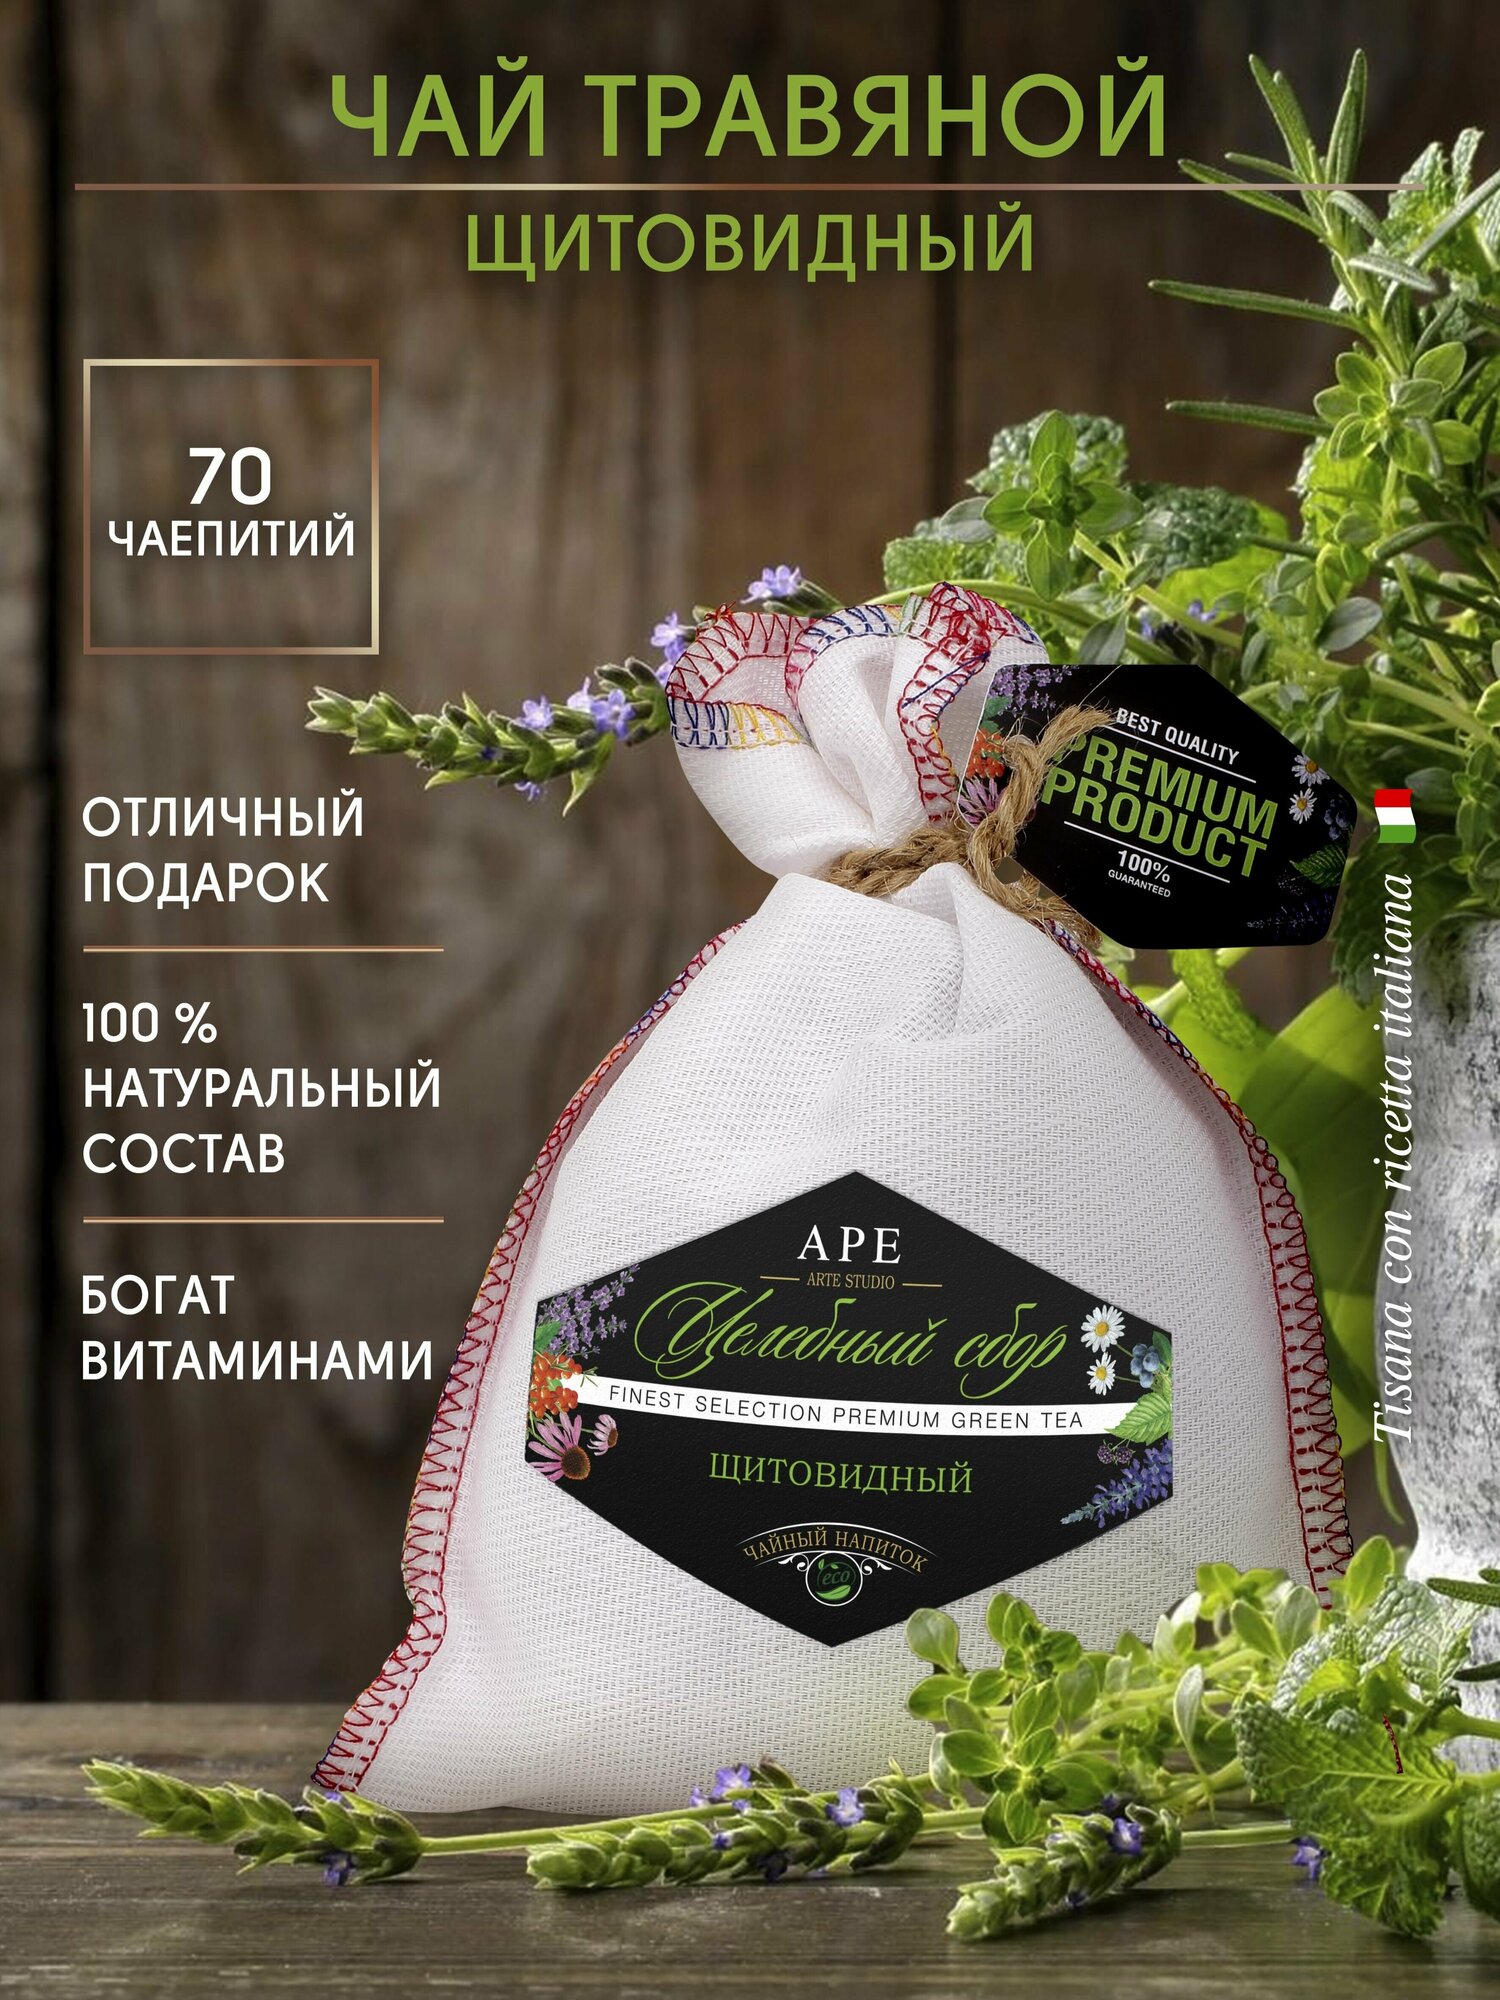 Травяной чай целебный сбор подарочный, новогодний подарок "Щитовидный" - фотография № 1